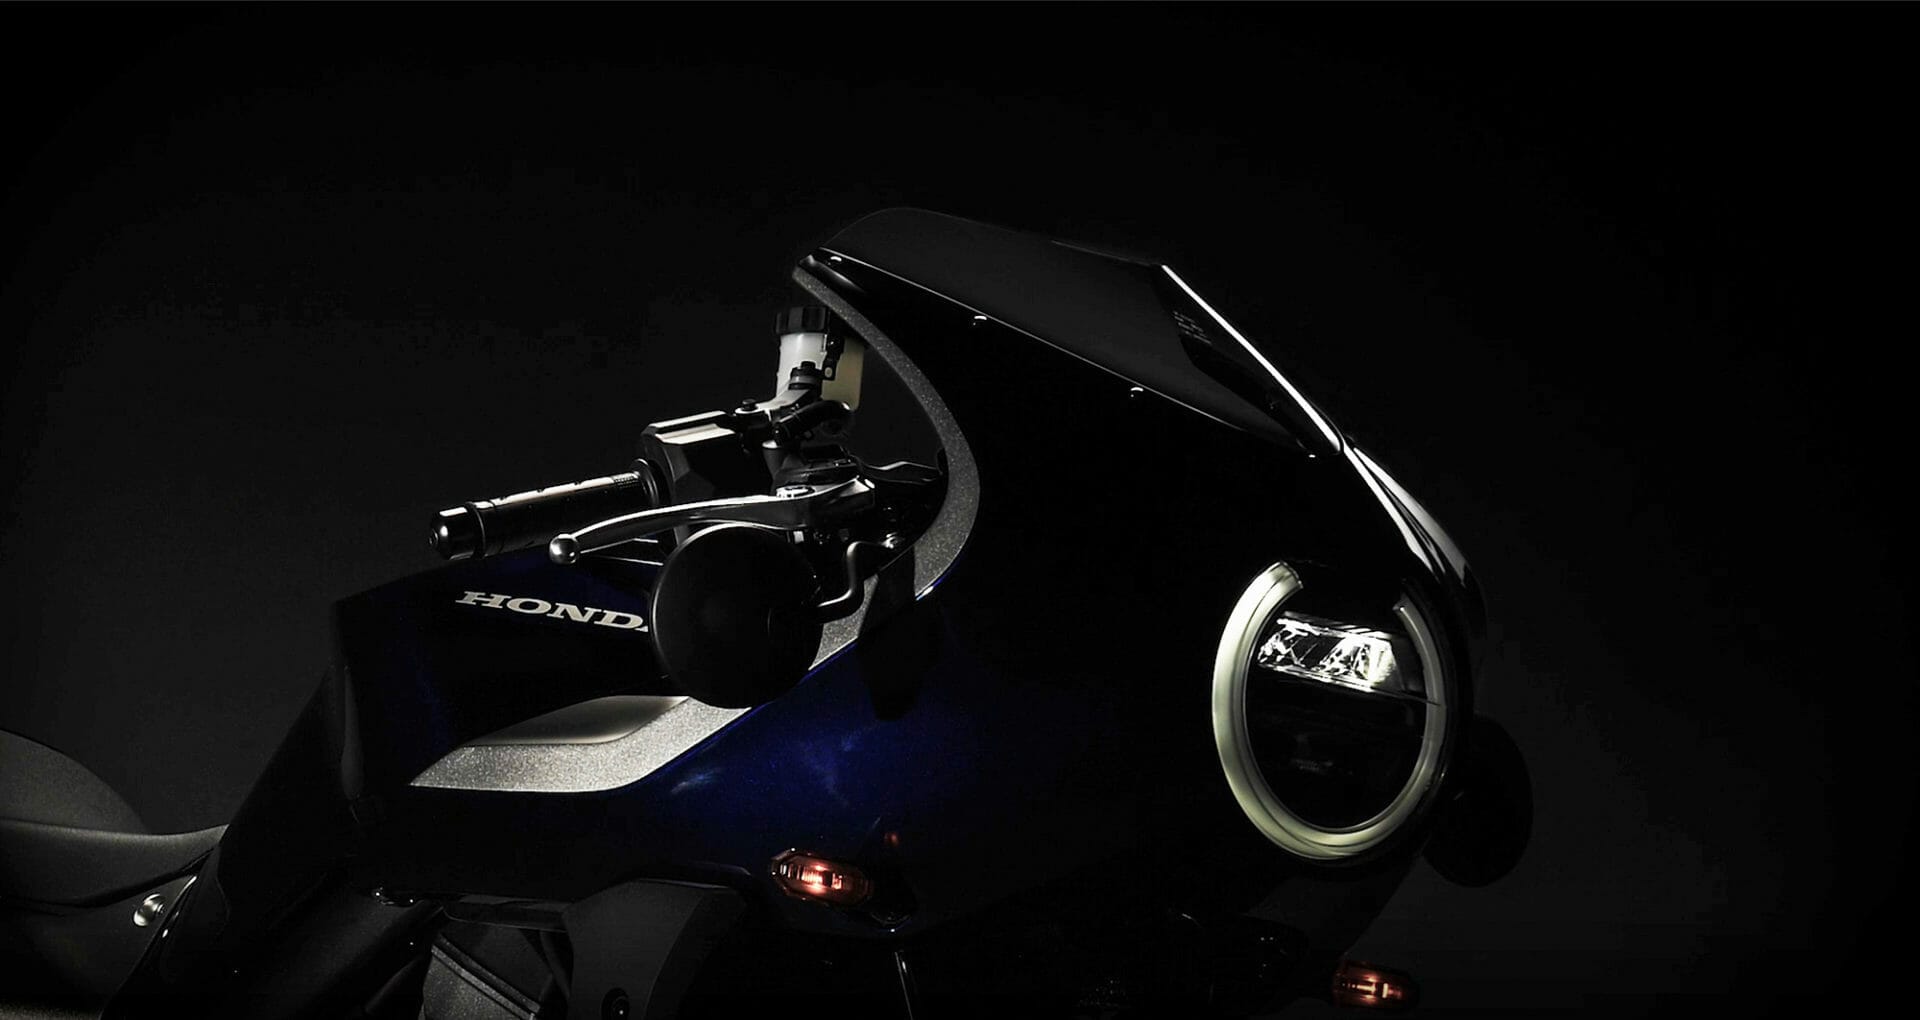 Honda Hawk 11, weitere Bilder und Details
- auch in der MOTORRAD NACHRICHTEN APP